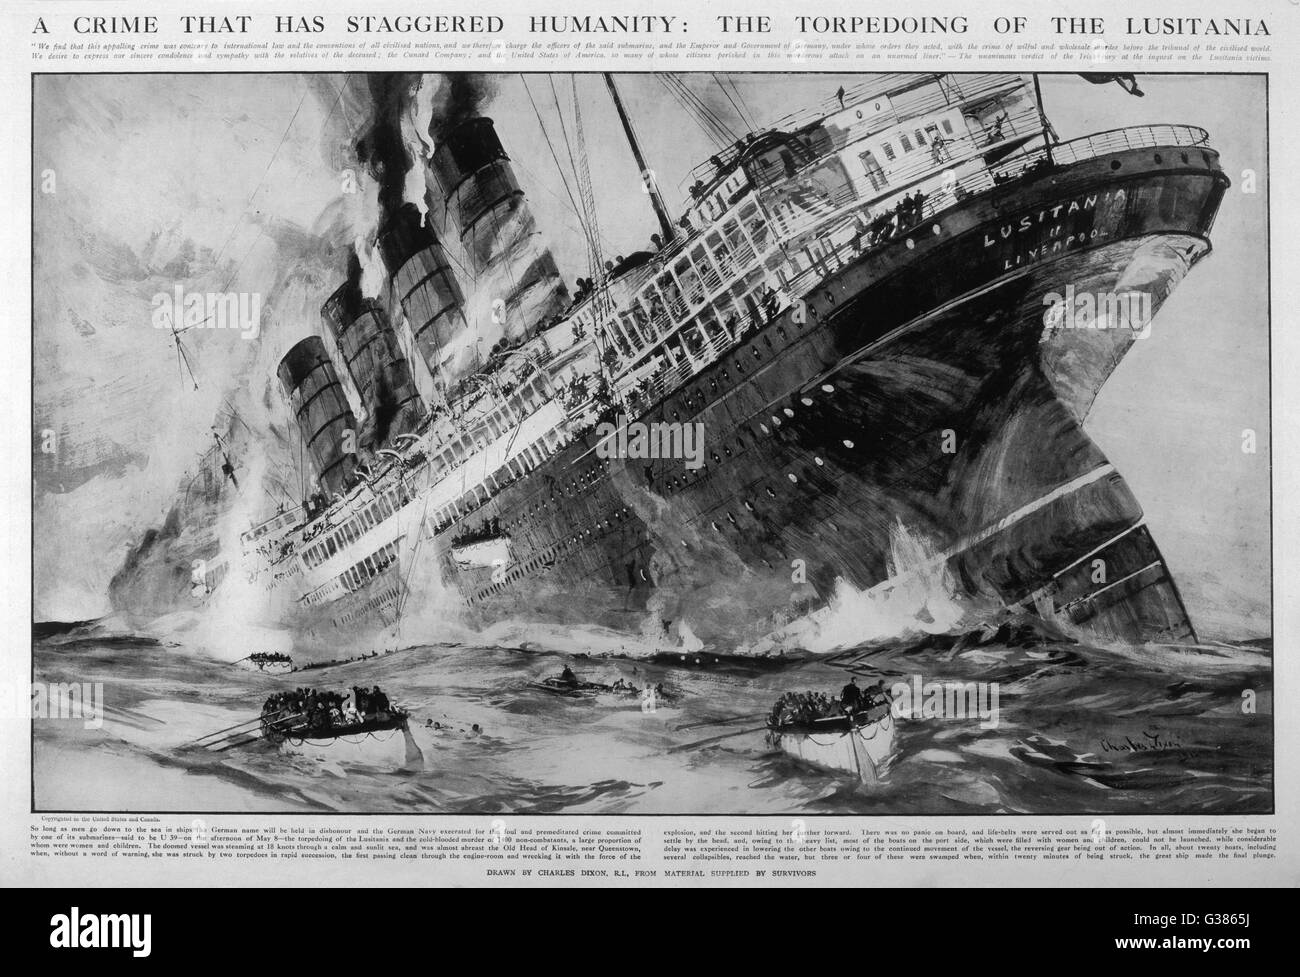 Das Cunard Passagierschiff sinkt mit dem Verlust von 1198 Leben nach wird vor der irischen Küste torpediert durch deutsches u-Boot u-20, während der Rückkehr nach Großbritannien aus Amerika.     Datum: 7. Mai 1915 Stockfoto